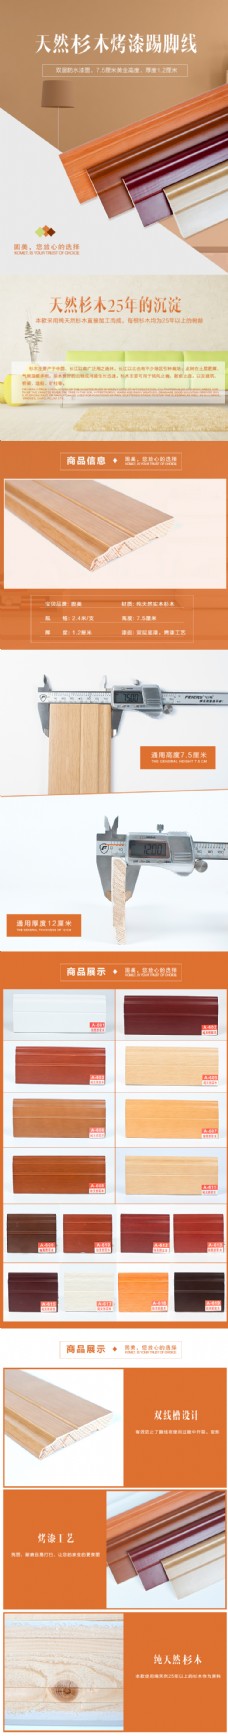 木材天然实木踢脚线家具板材装修设计淘宝详情页